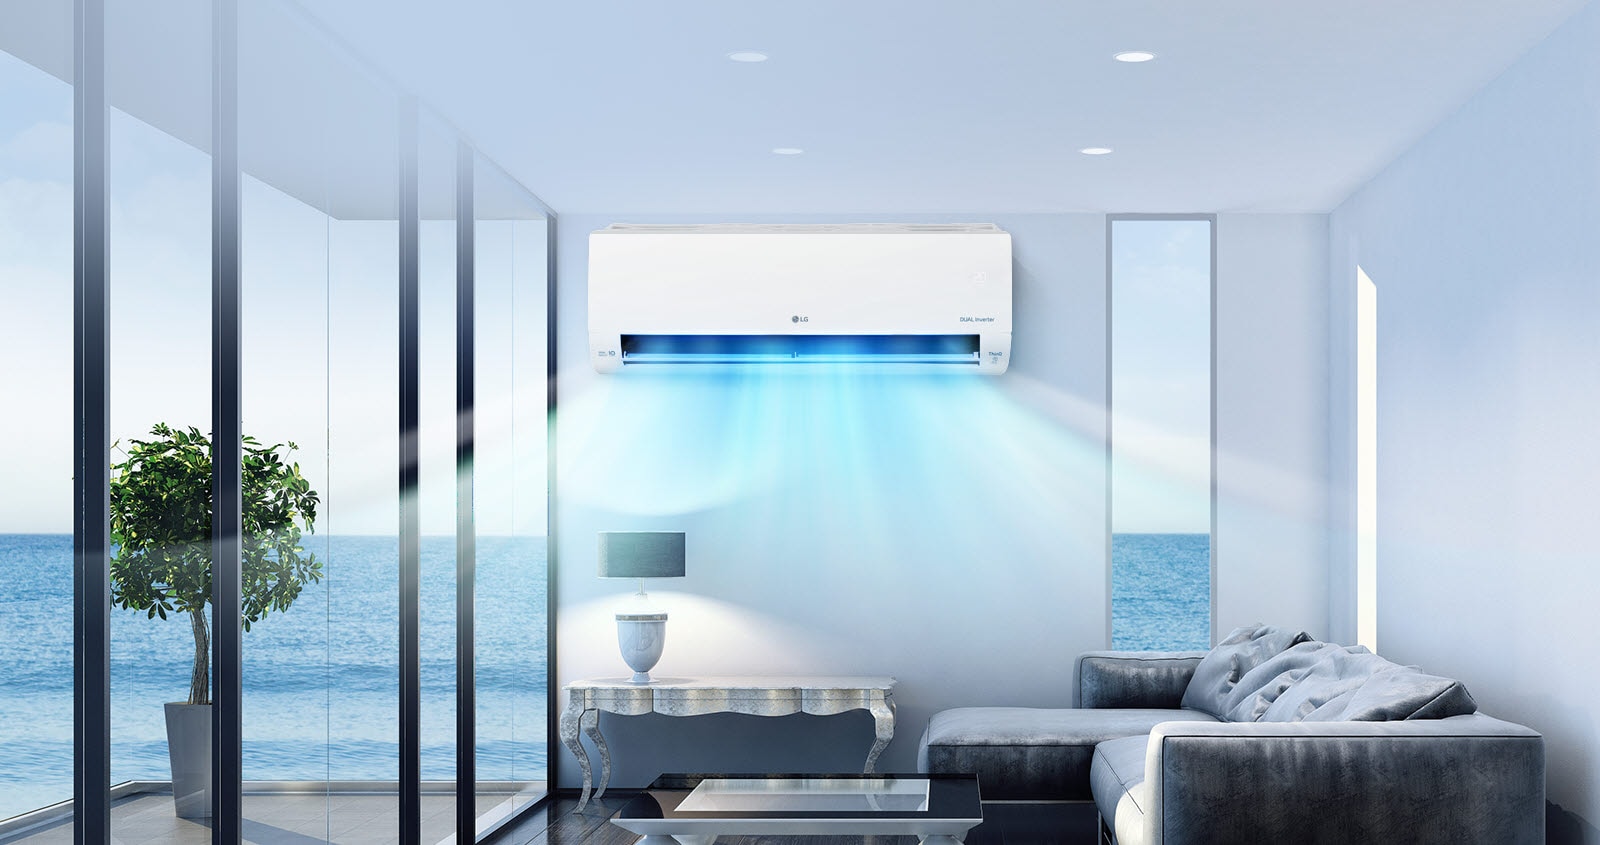 صورة يظهر بها مكيف الهواء في المنتصف مع وجود رياح زرقاء تهب على غرفة المعيشة في المقدمة.